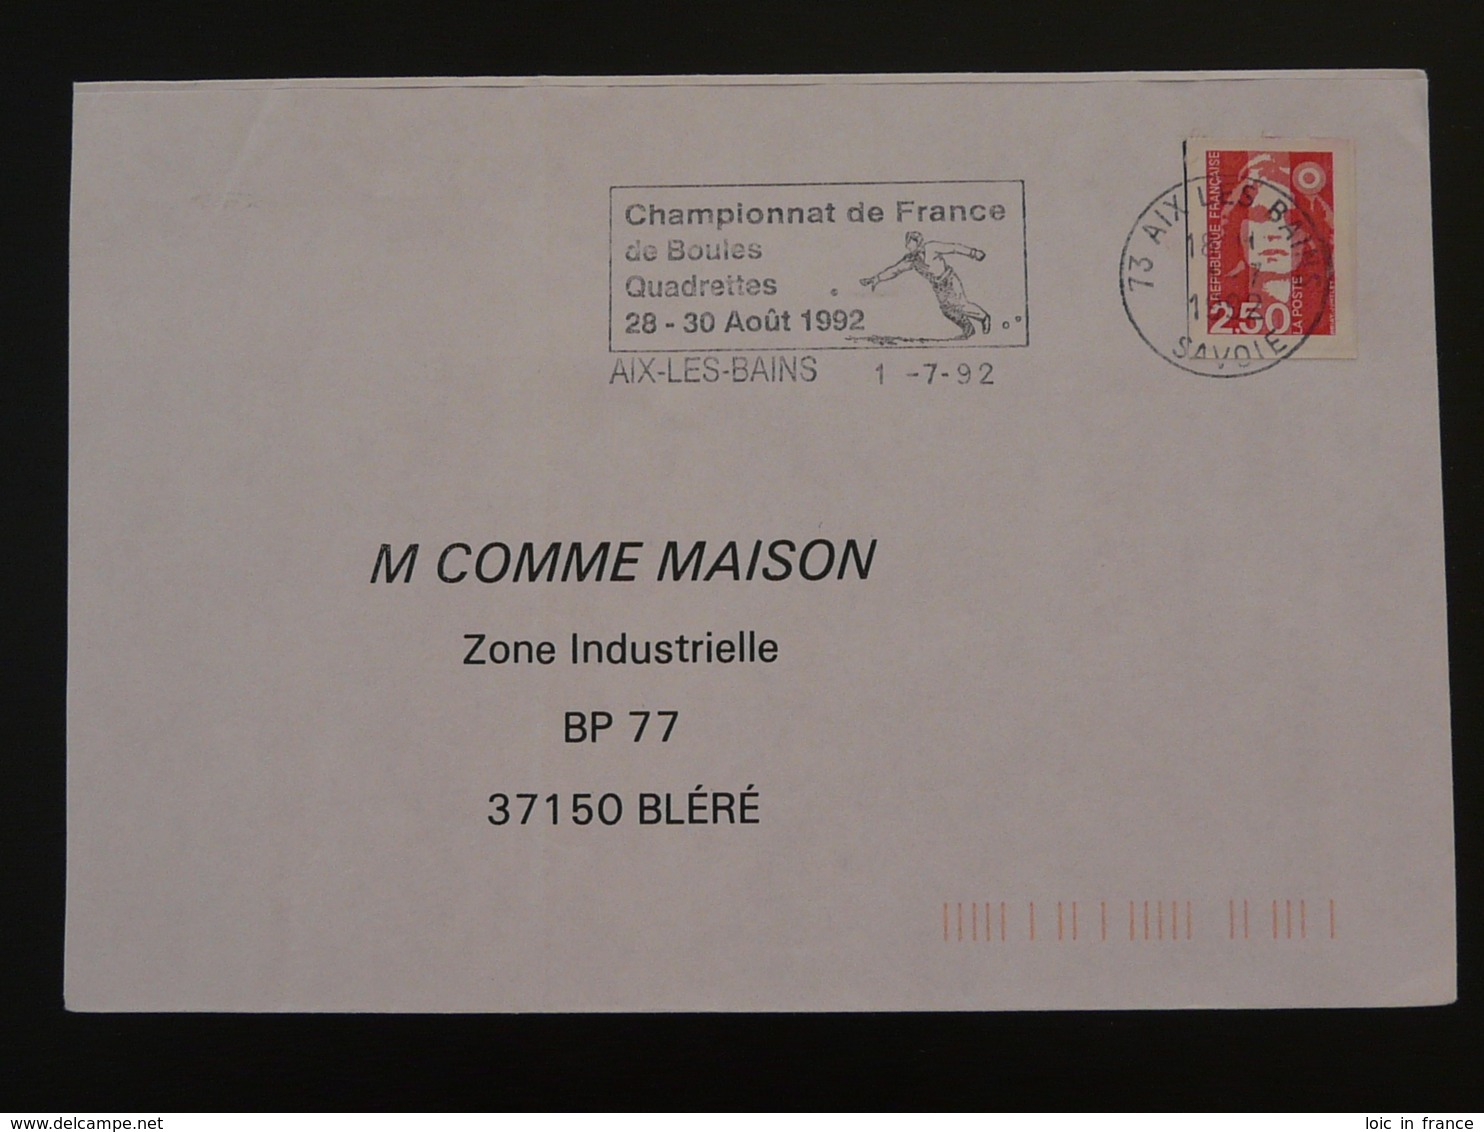 73 Savoie Aix Les Bains Championnat Petanque 1992 (ex 3) - Flamme Sur Lettre Postmark On Cover - Petanque